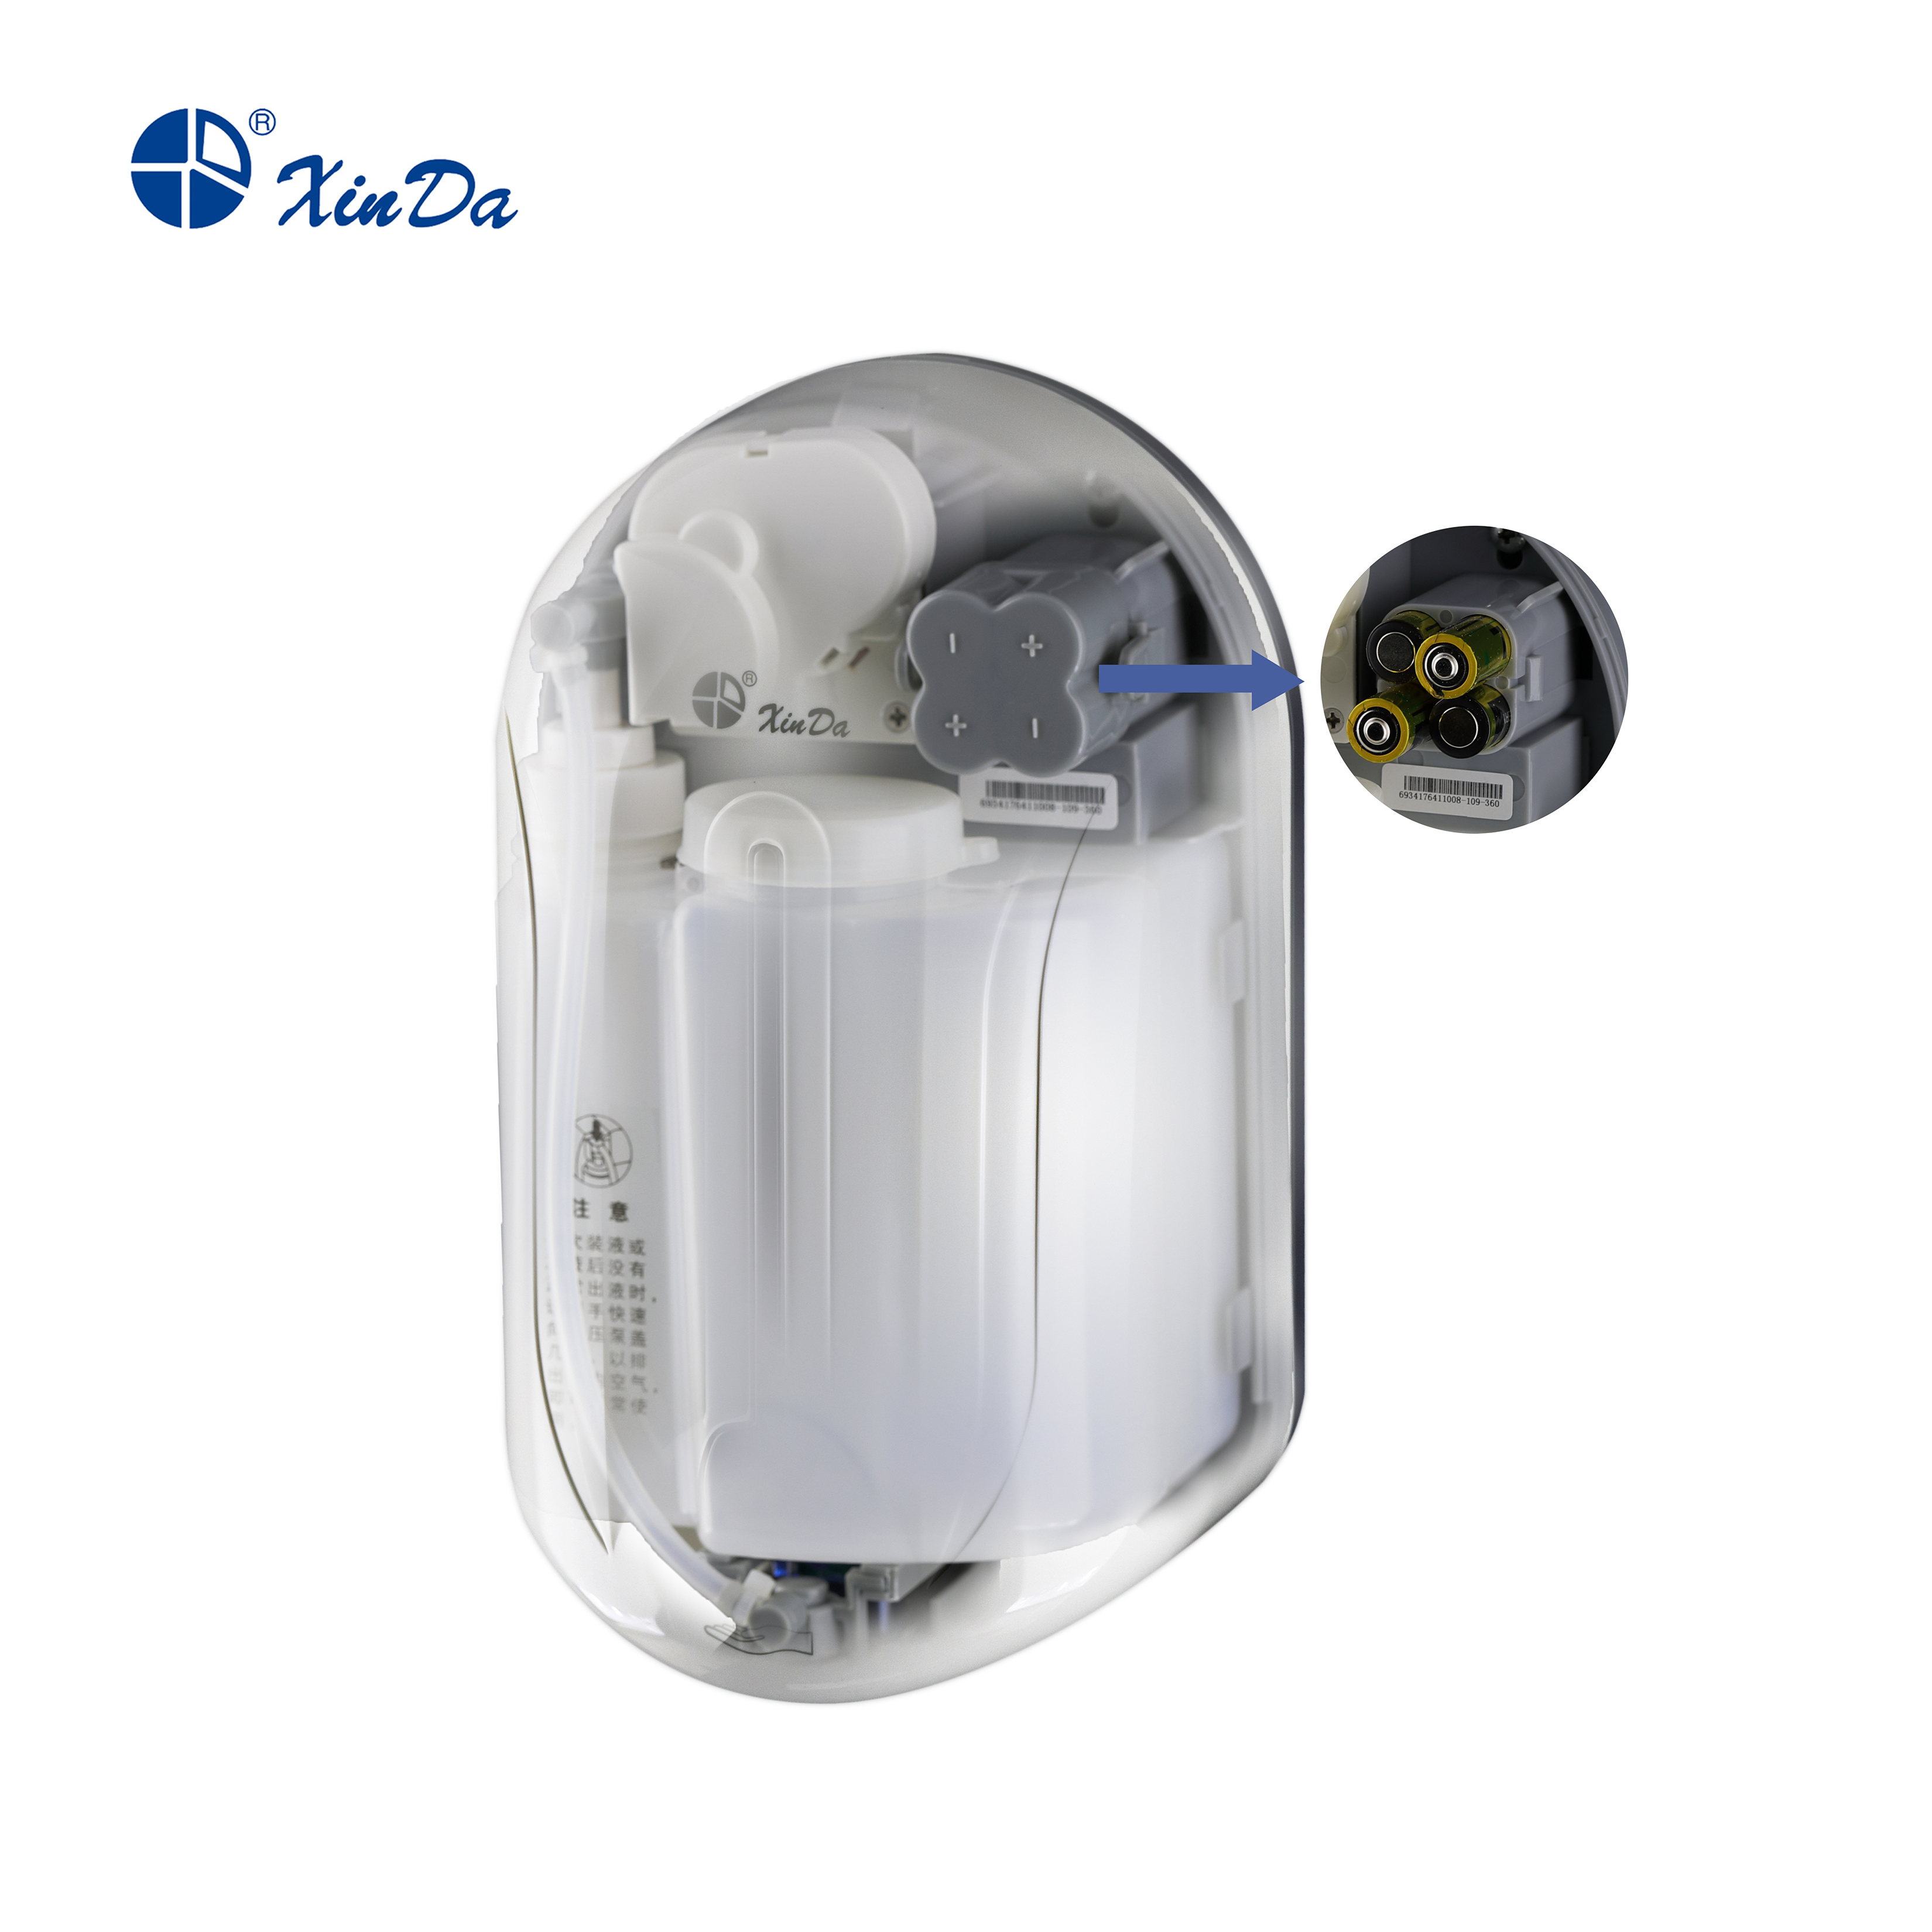 XinDa ZYQ110 Niedriger Preis Großhandel Spray Drip Foaming ABS Kunststoff Flüssigseife Automatischer Seifenspender